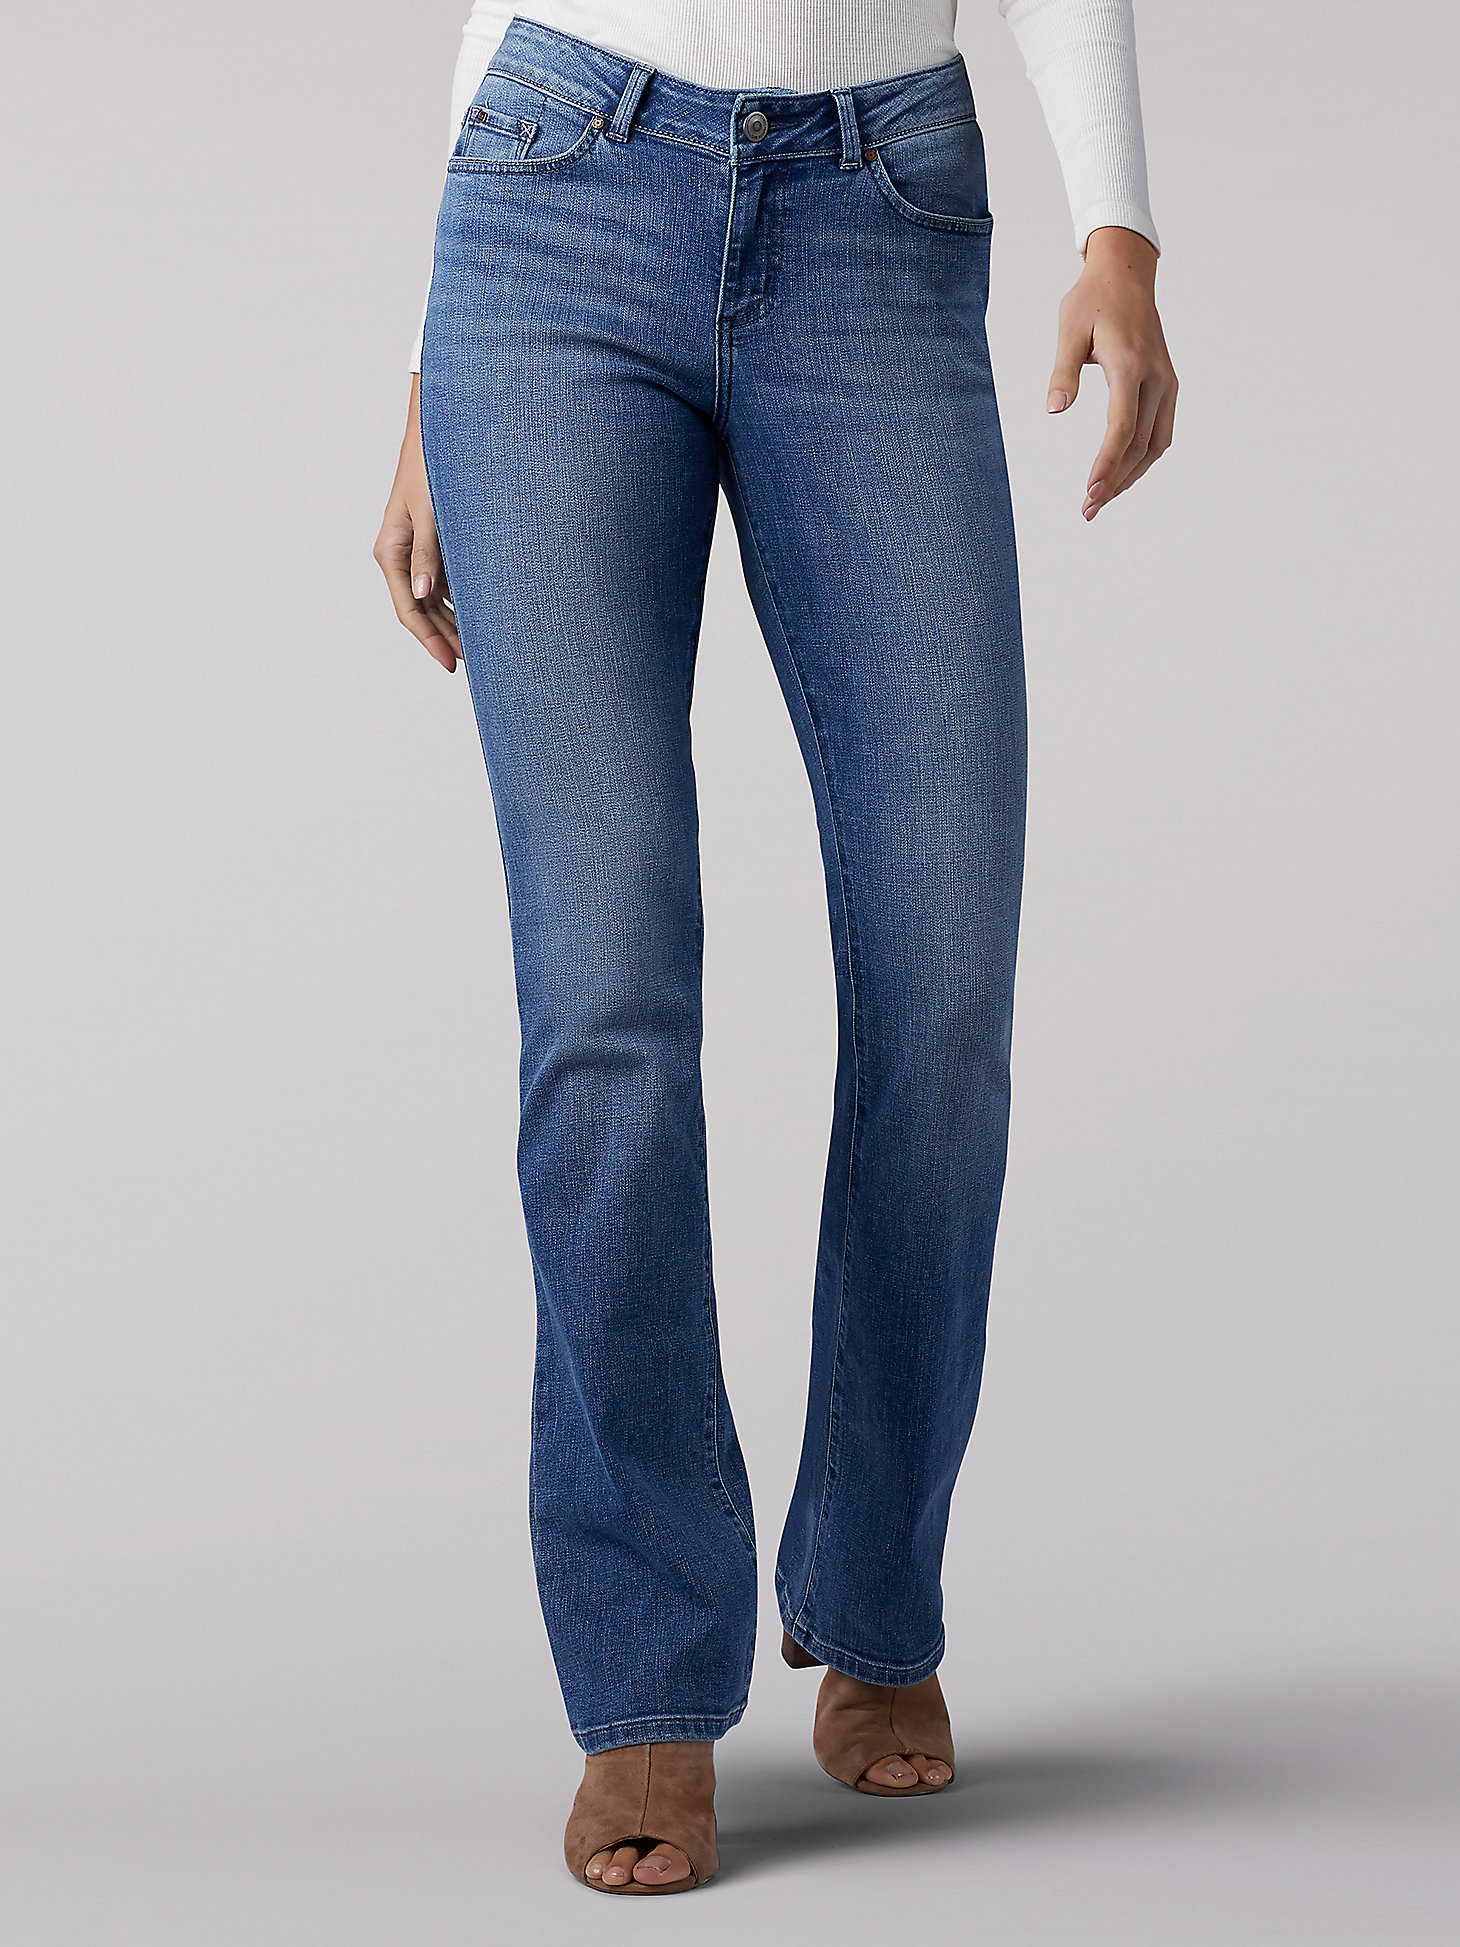 Women's Curvy Fit Bootcut Jean | Women's Jeans |